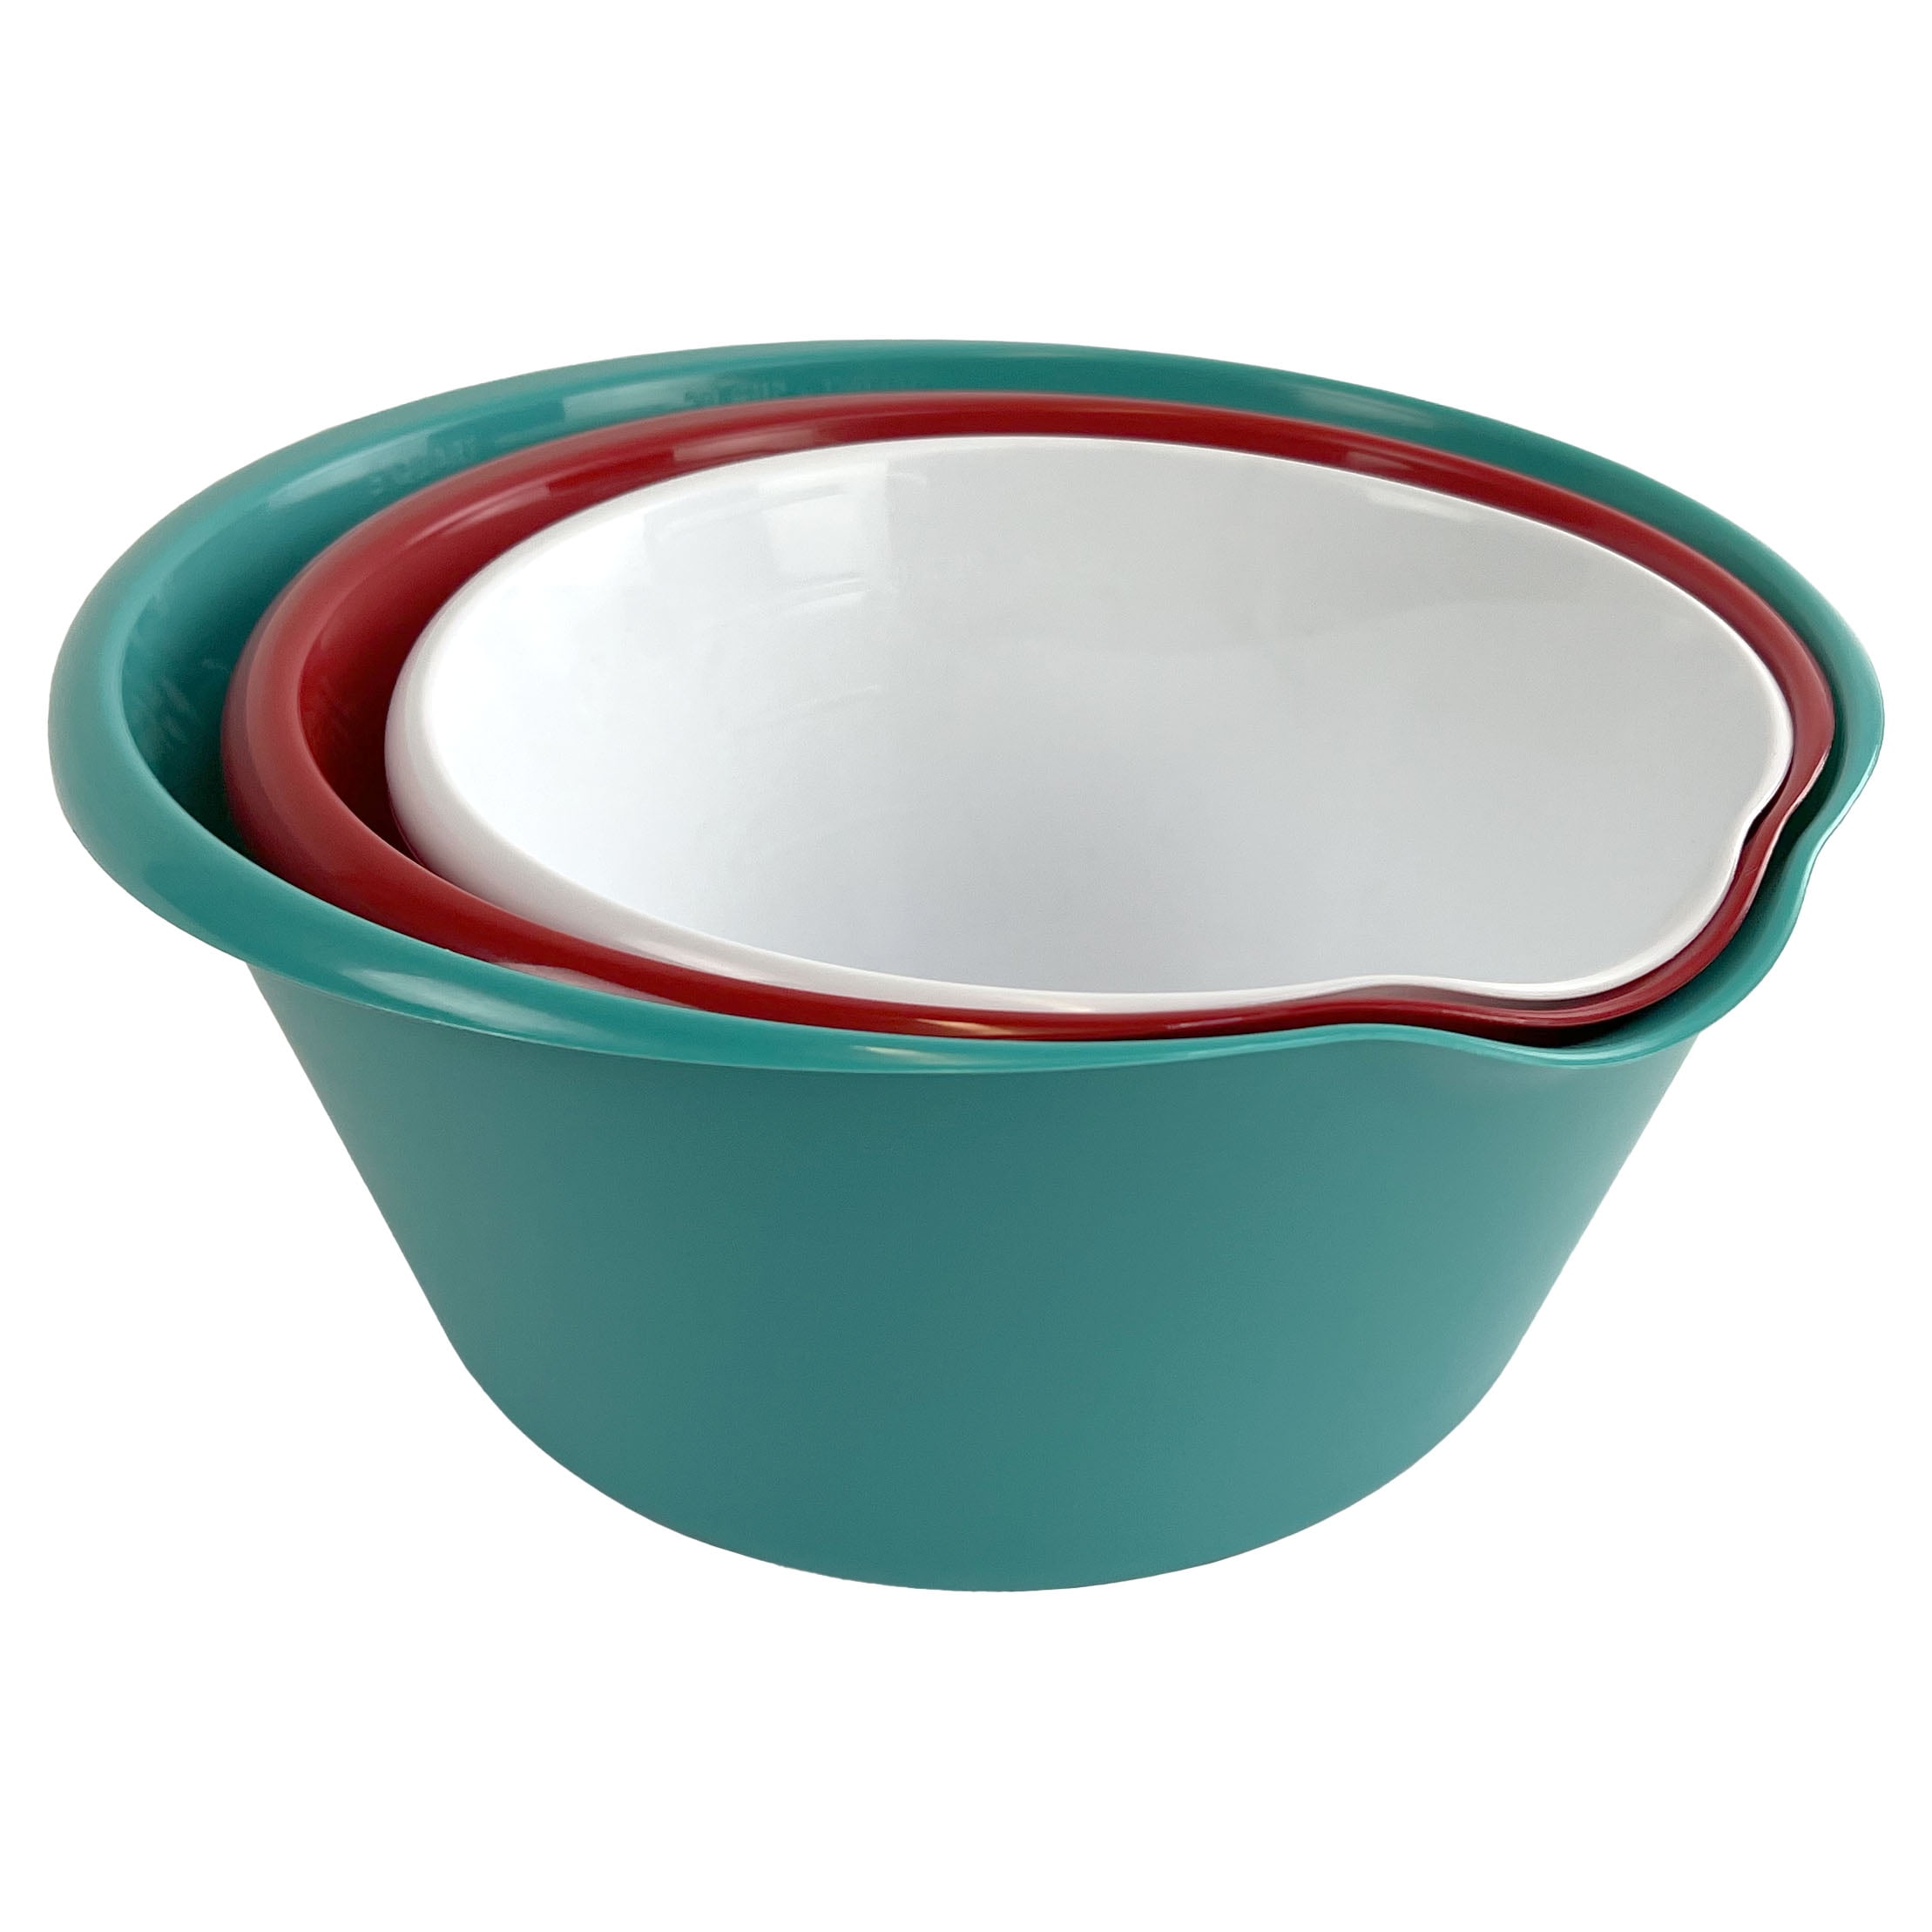 Red Melamine Pour Spout Bowls - Set of 3